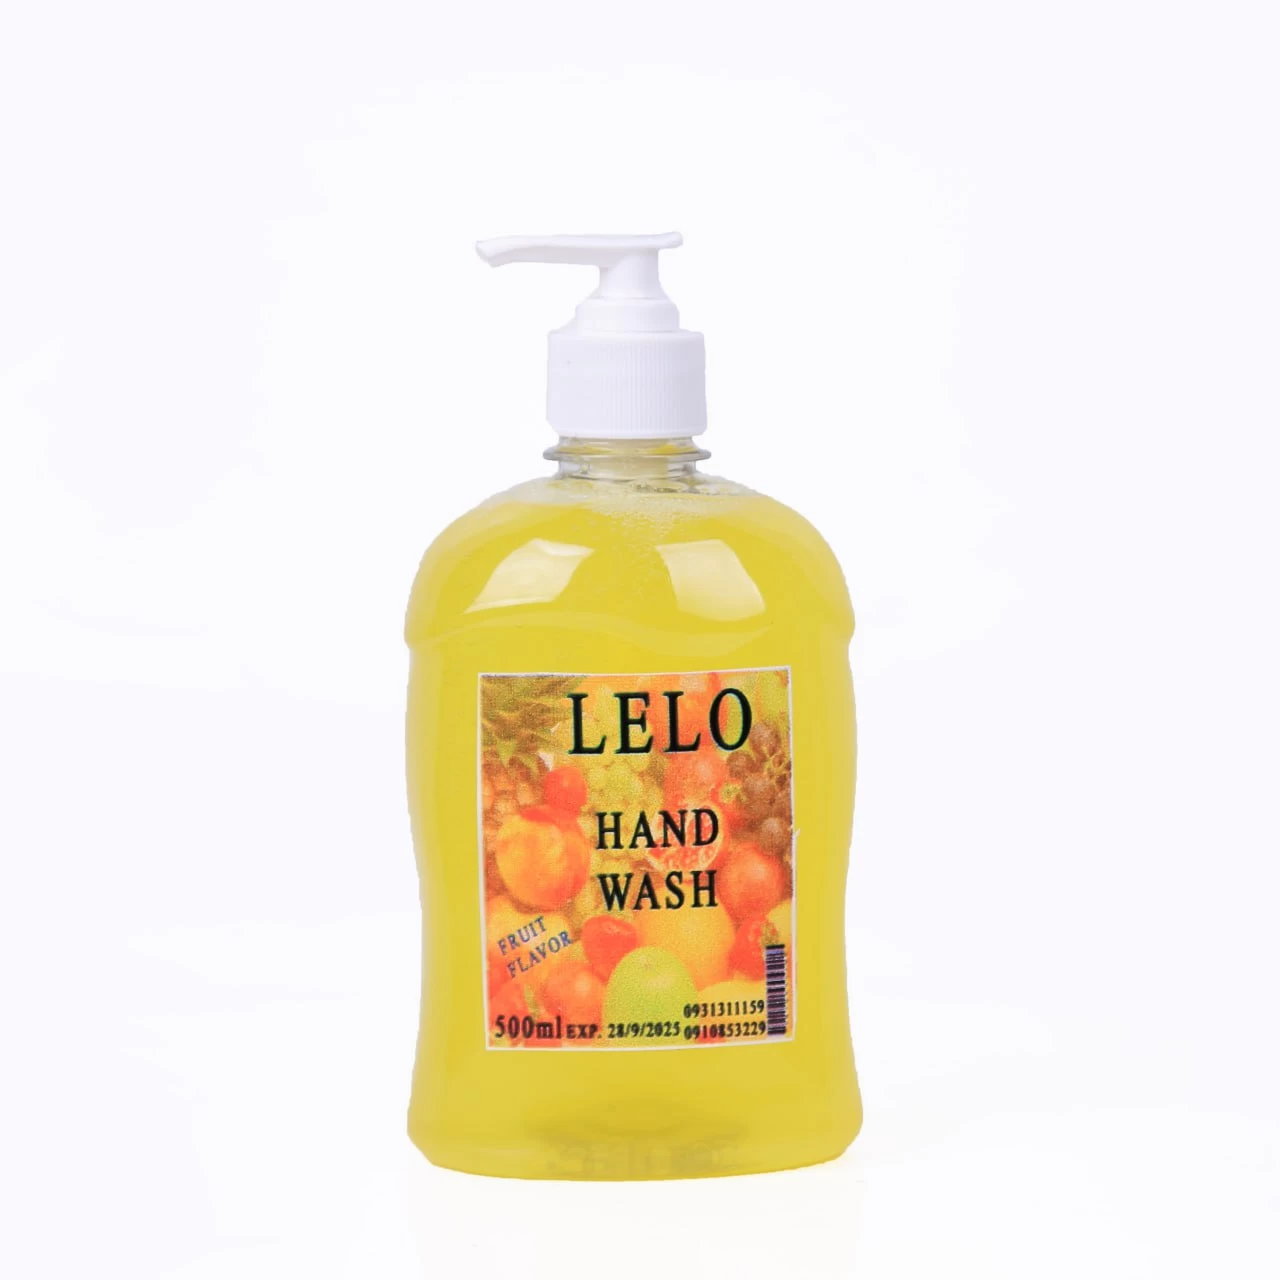 ሌሎ የእጅ ፈሳሽ ሳሙና  500 ሚሊ/ Lelo  Hand wash 500 ml